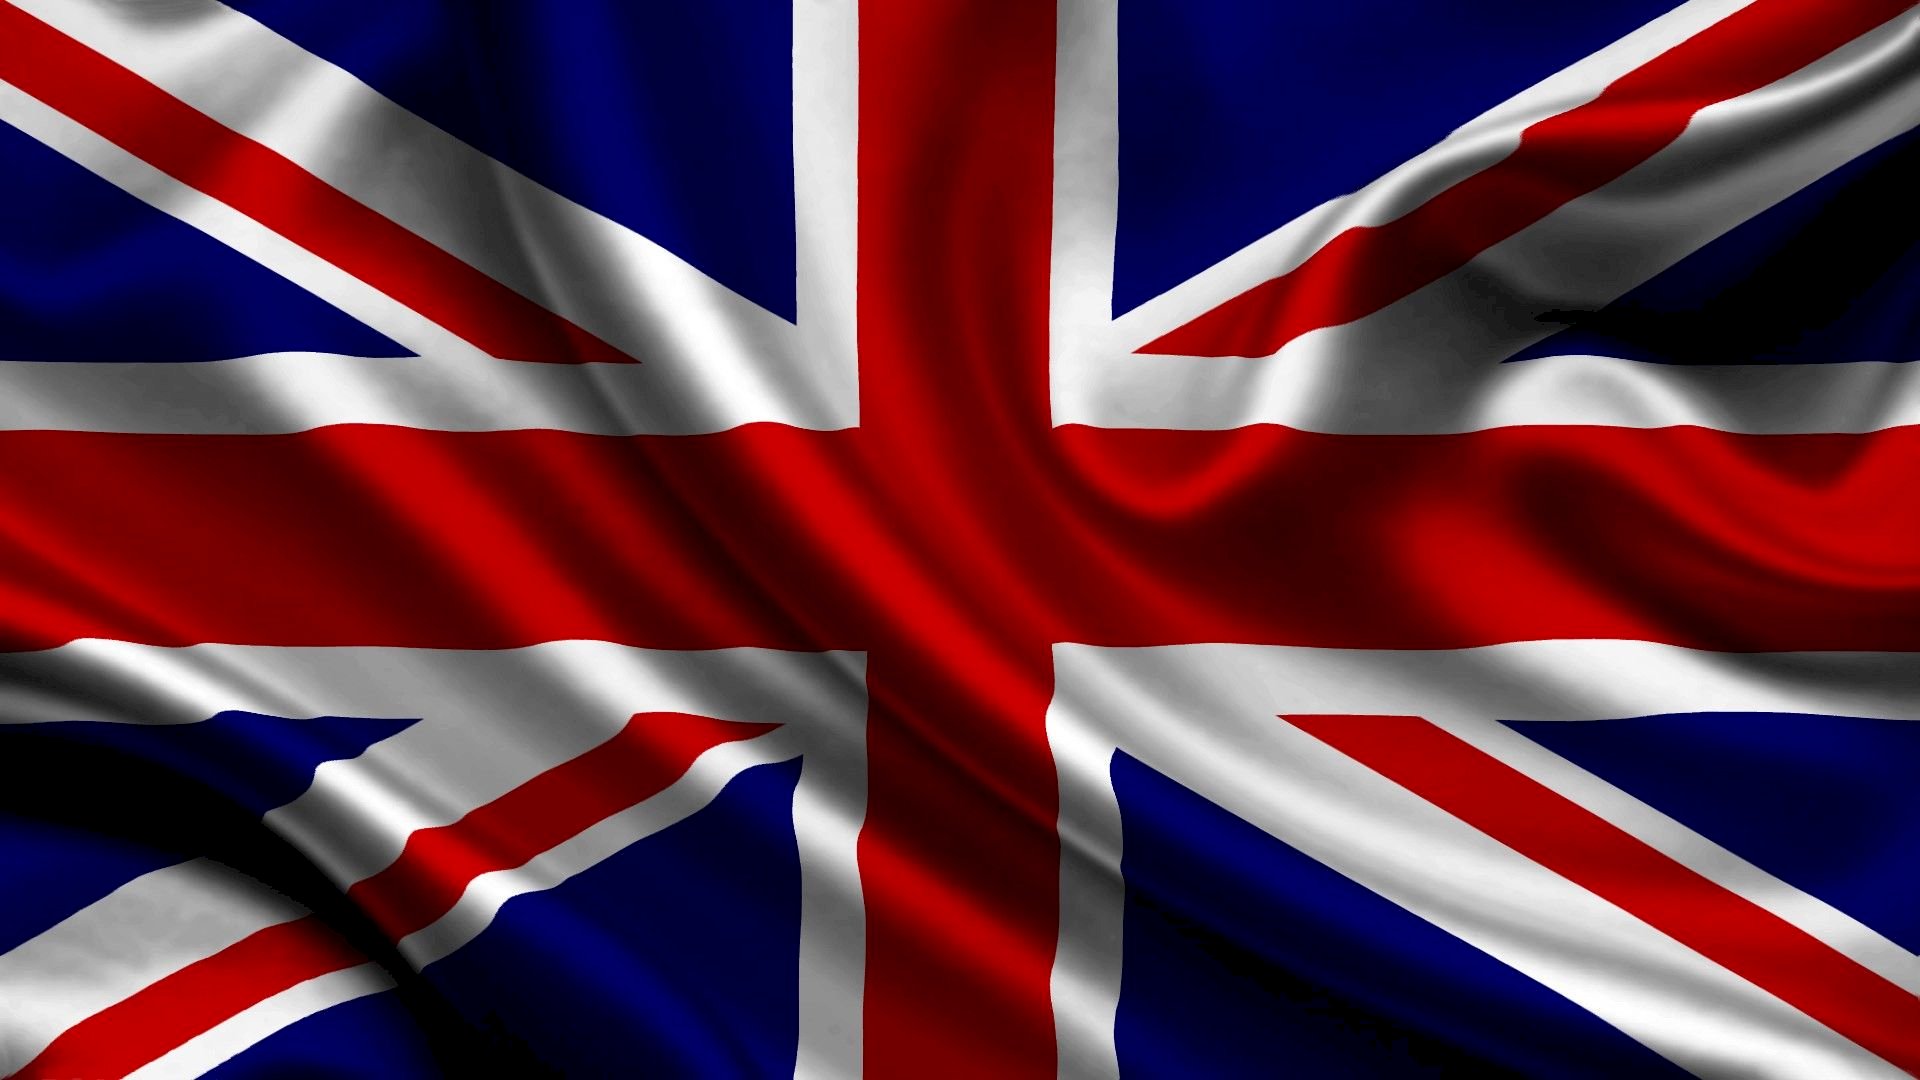 Hình ảnh background lá cờ Anh: Hình ảnh background lá cờ Anh - LỜI KHẲNG ĐỊNH SỨC MẠNH VÀ TÔN VINH VĂN HÓA. Sự kết hợp giữa hình ảnh chụp ở các thành phố của Anh và background lá cờ nước Anh đem đến cho người dùng sự kết hợp đầy màu sắc và đẳng cấp. Hãy thưởng thức những hình ảnh tuyệt đẹp nhất được chụp tại đất nước Anh và sử dụng nó để tôn vinh và quảng bá văn hóa tuyệt vời của đất nước này.